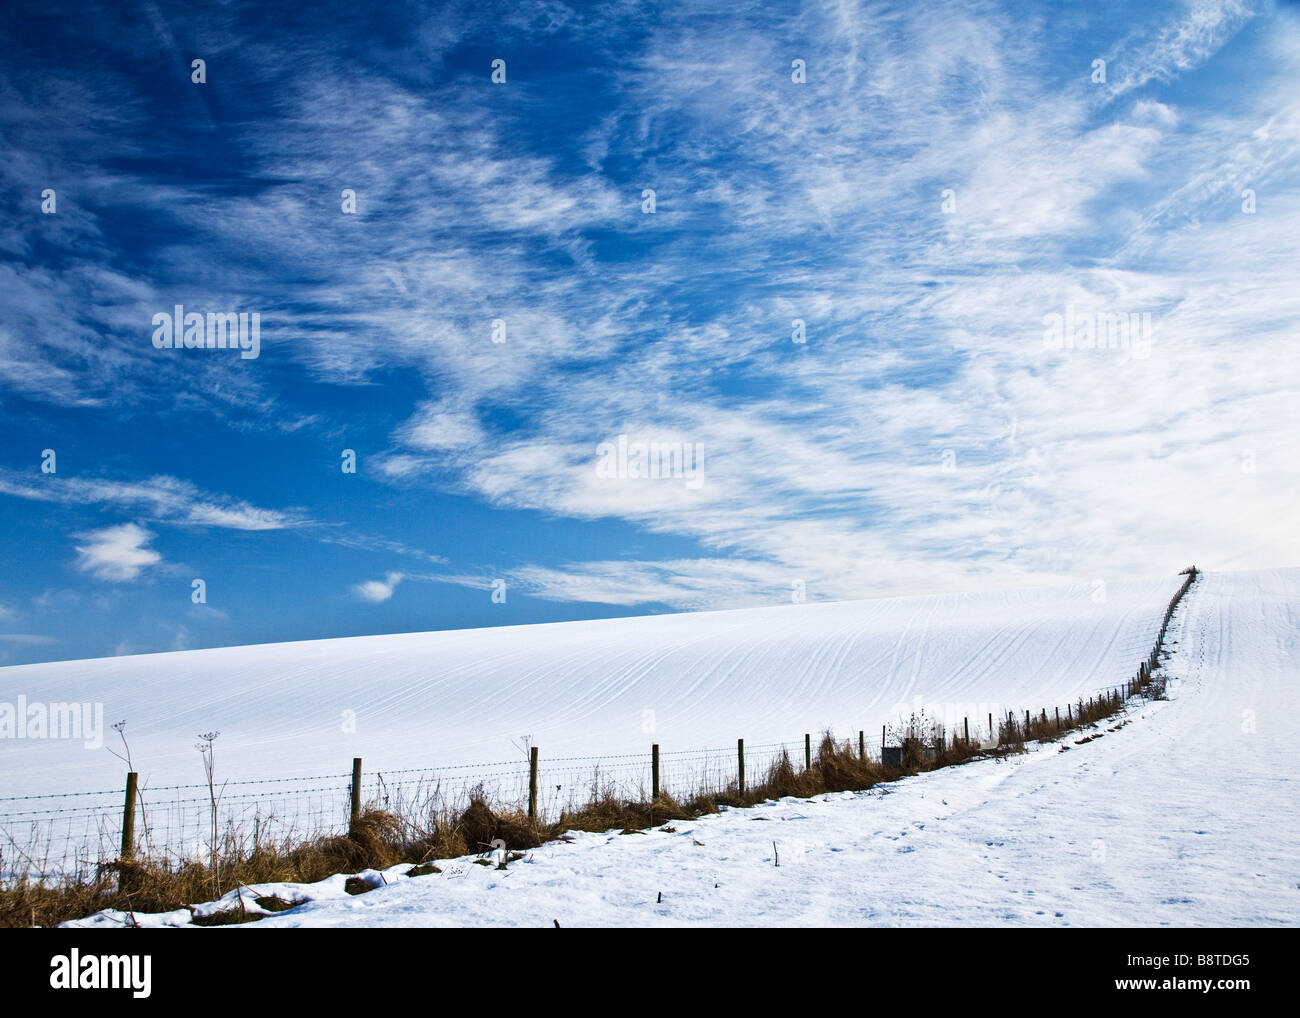 Einen sonnigen verschneiten Winter Landschaftsansicht oder Szene zeigt einen schneebedeckten Feld und Cirrus Wolkenbildung am blauen Himmel Stockfoto